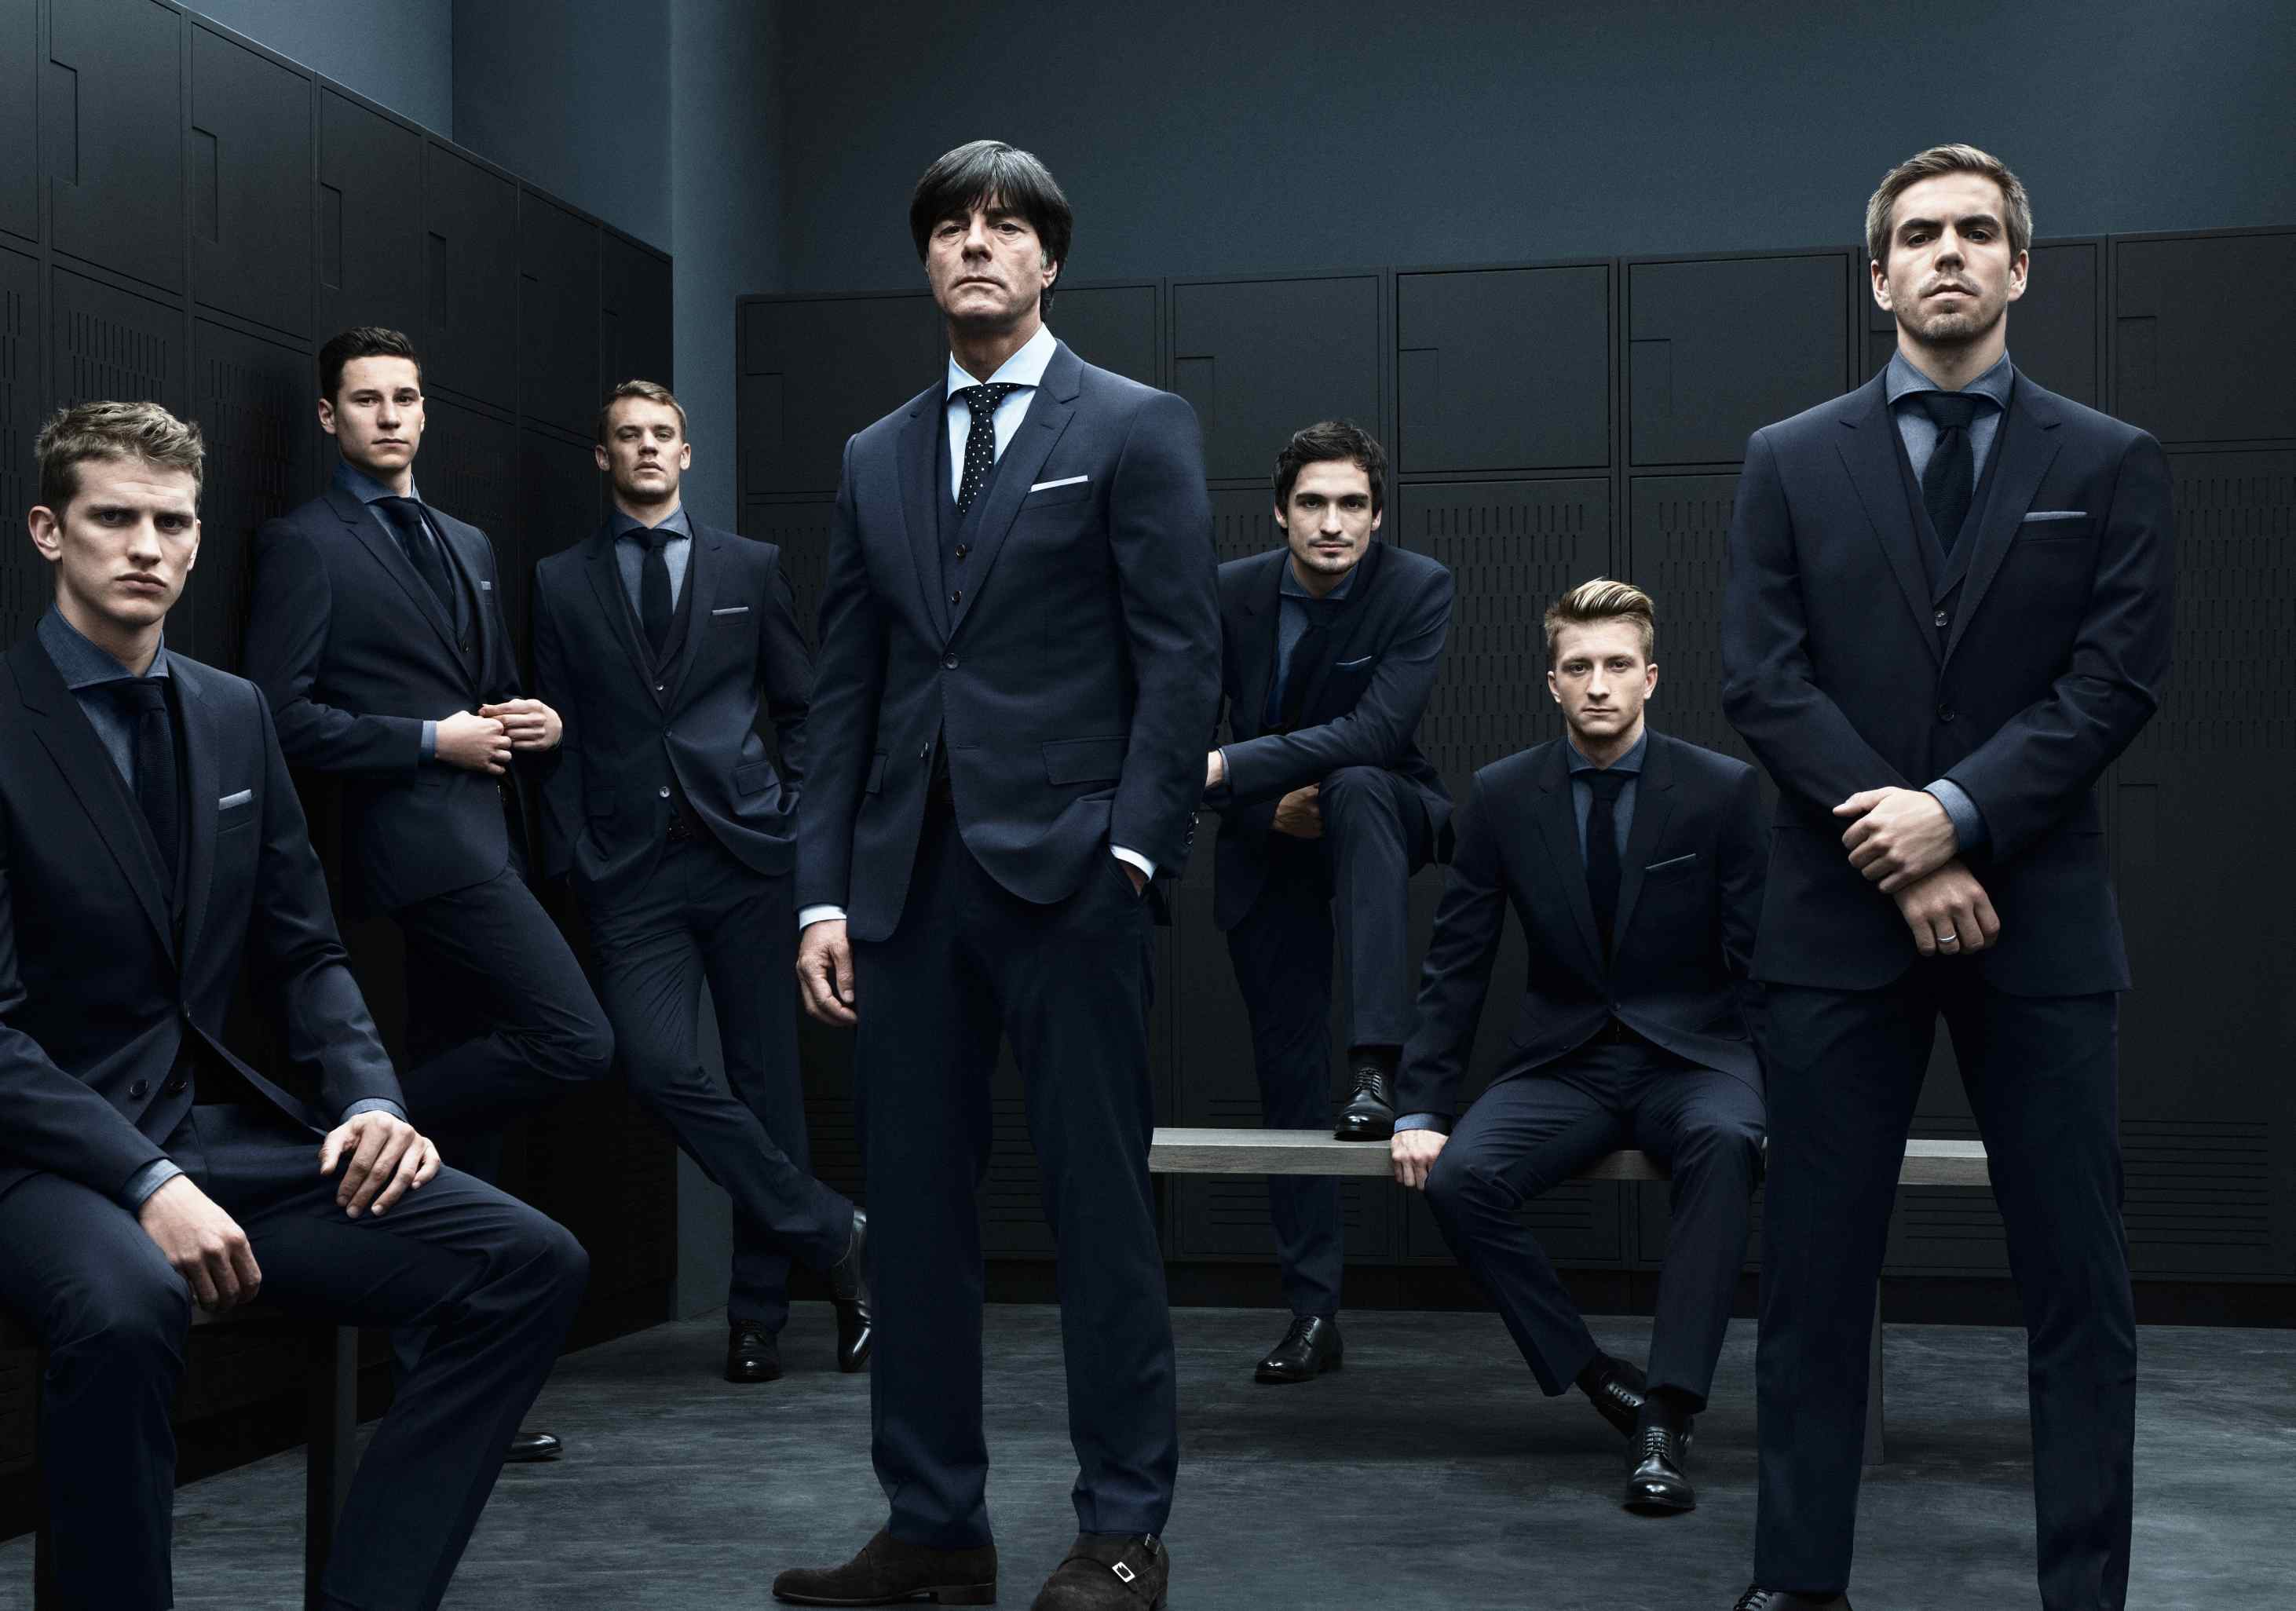 7 сентября мужчина. Сборная Германии по футболу Hugo Boss. Сборная Германии по футболу в костюмах Hugo Boss. Несколько мужчин в костюмах. Пять мужчин в костюмах.